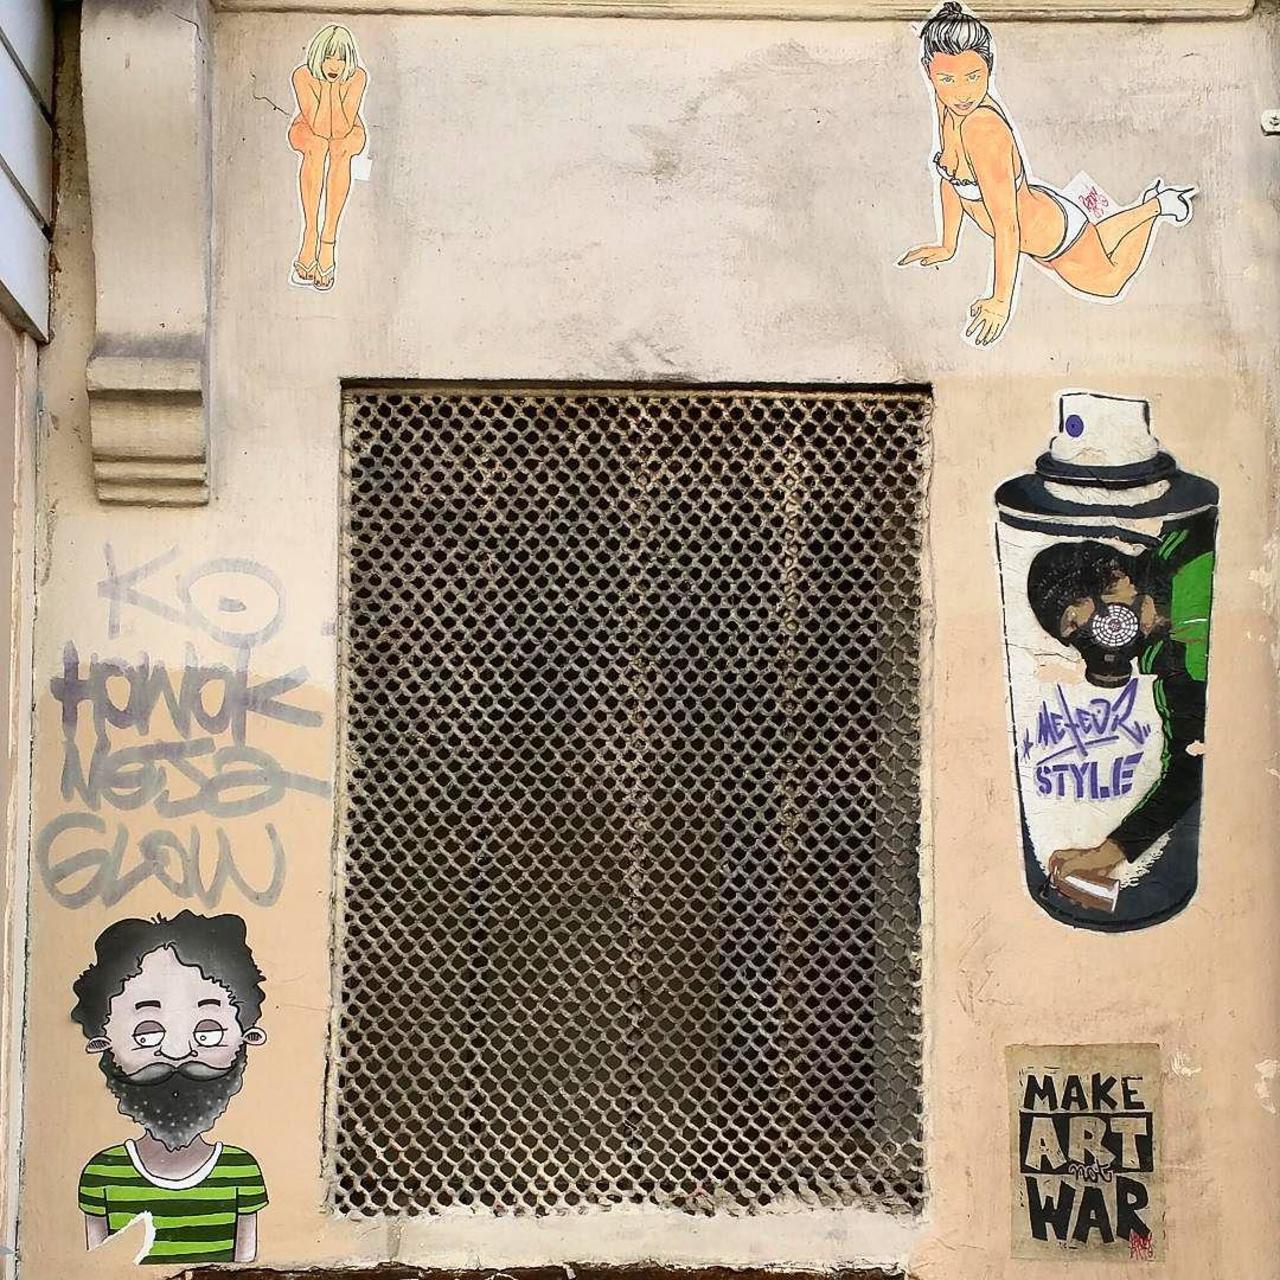 #Paris #graffiti photo by @alphaquadra http://ift.tt/1X4jKix #StreetArt http://t.co/yruEKpHMx9